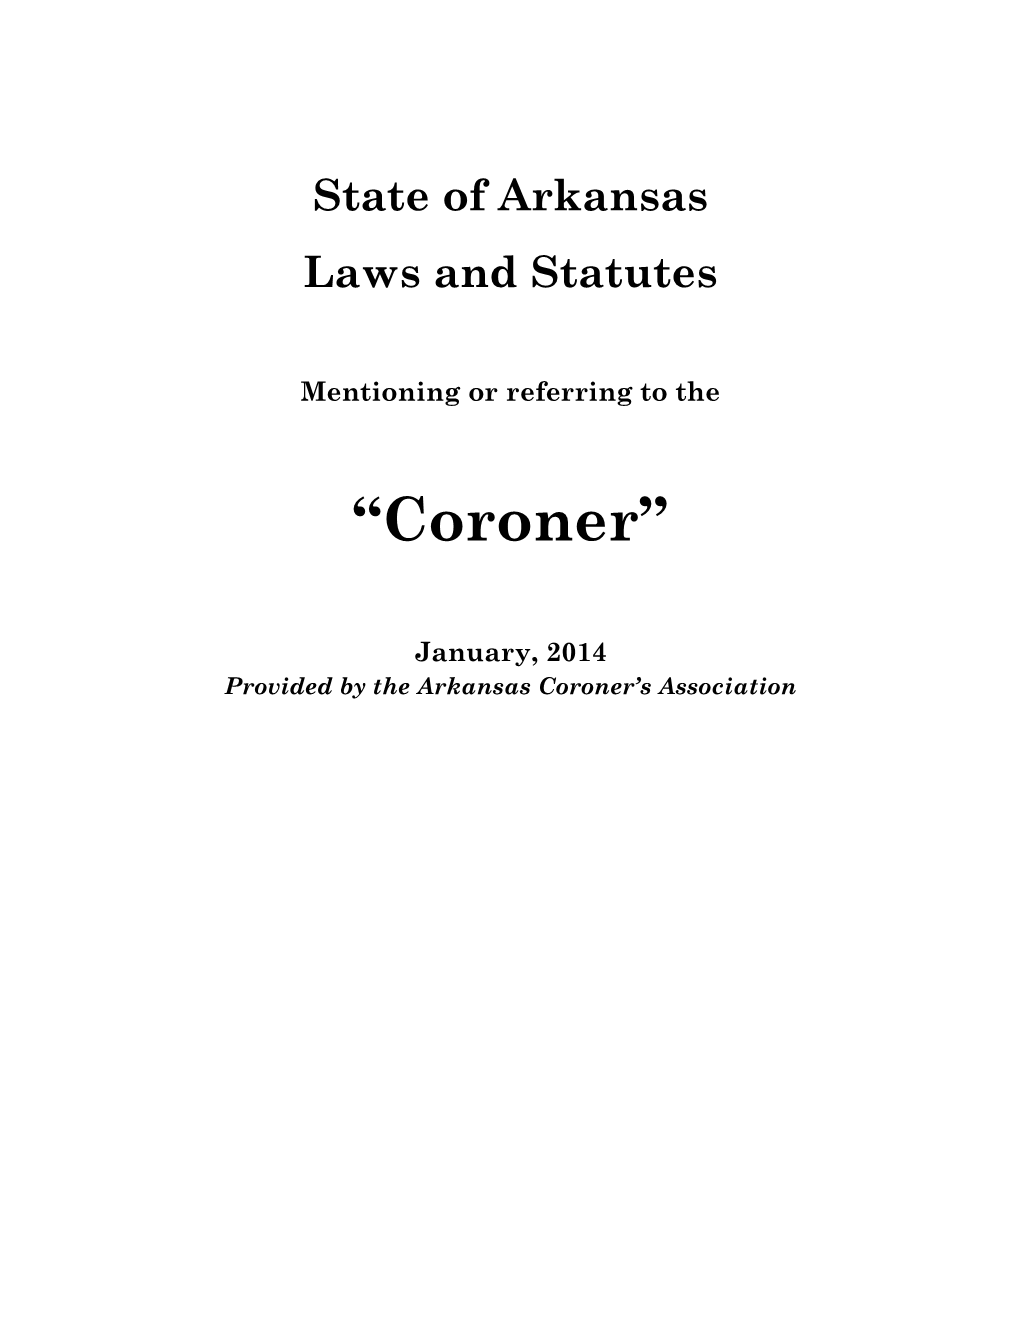 2014 Summary of Arkansas Law & "Coroner"